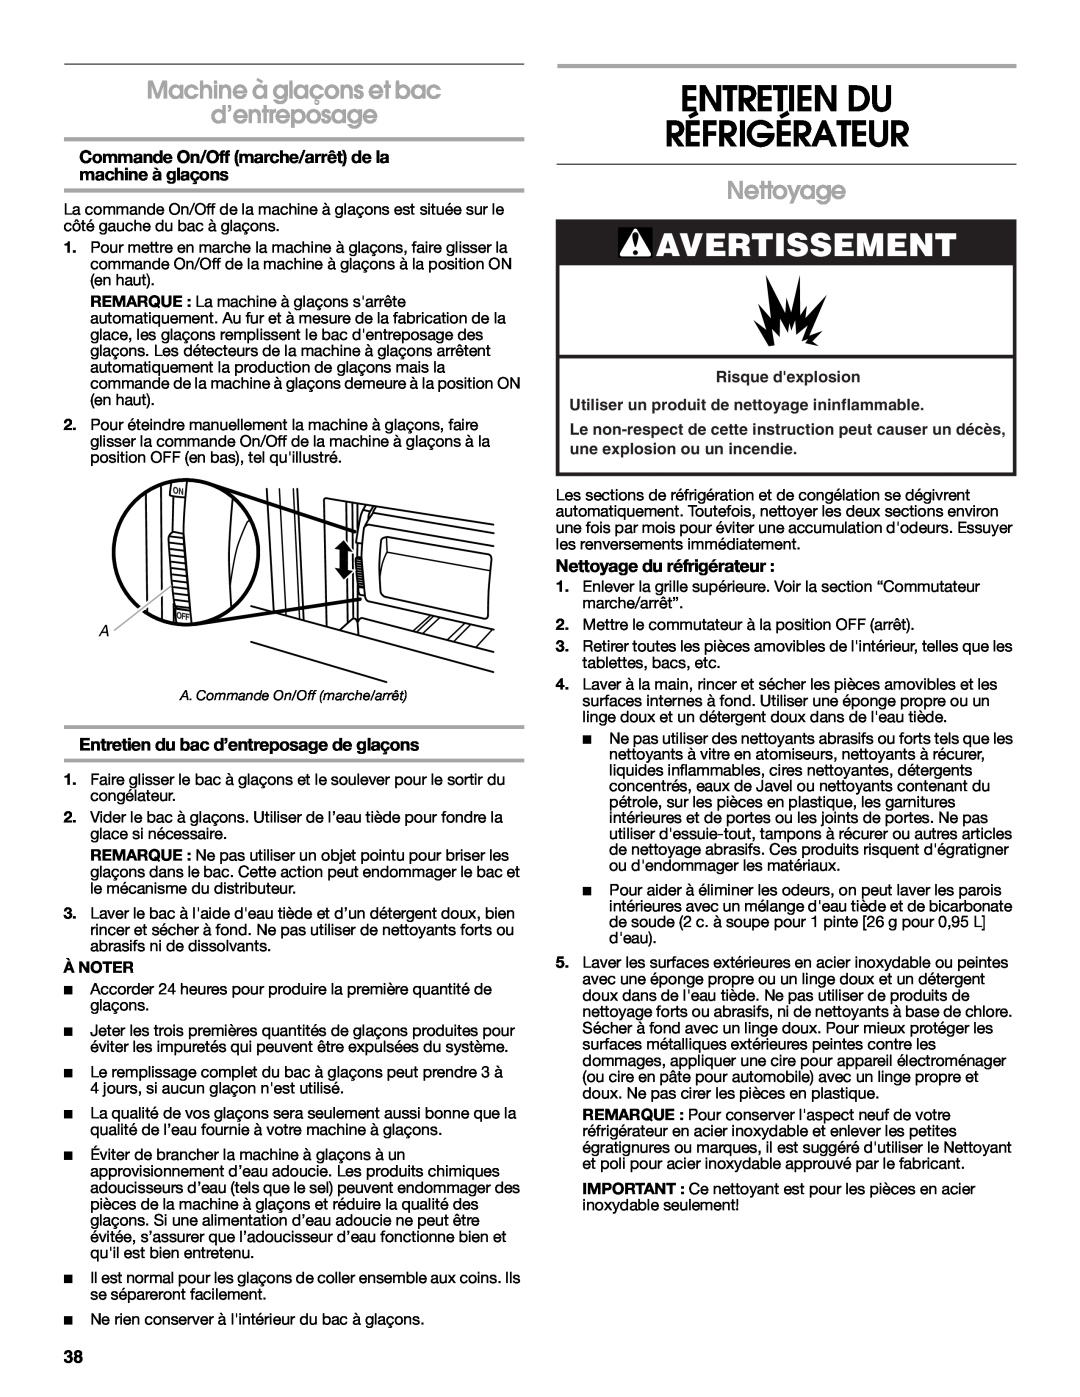 Jenn-Air W10183787A manual Entretien Du Réfrigérateur, Machine à glaçons et bac d’entreposage, Nettoyage, Avertissement 